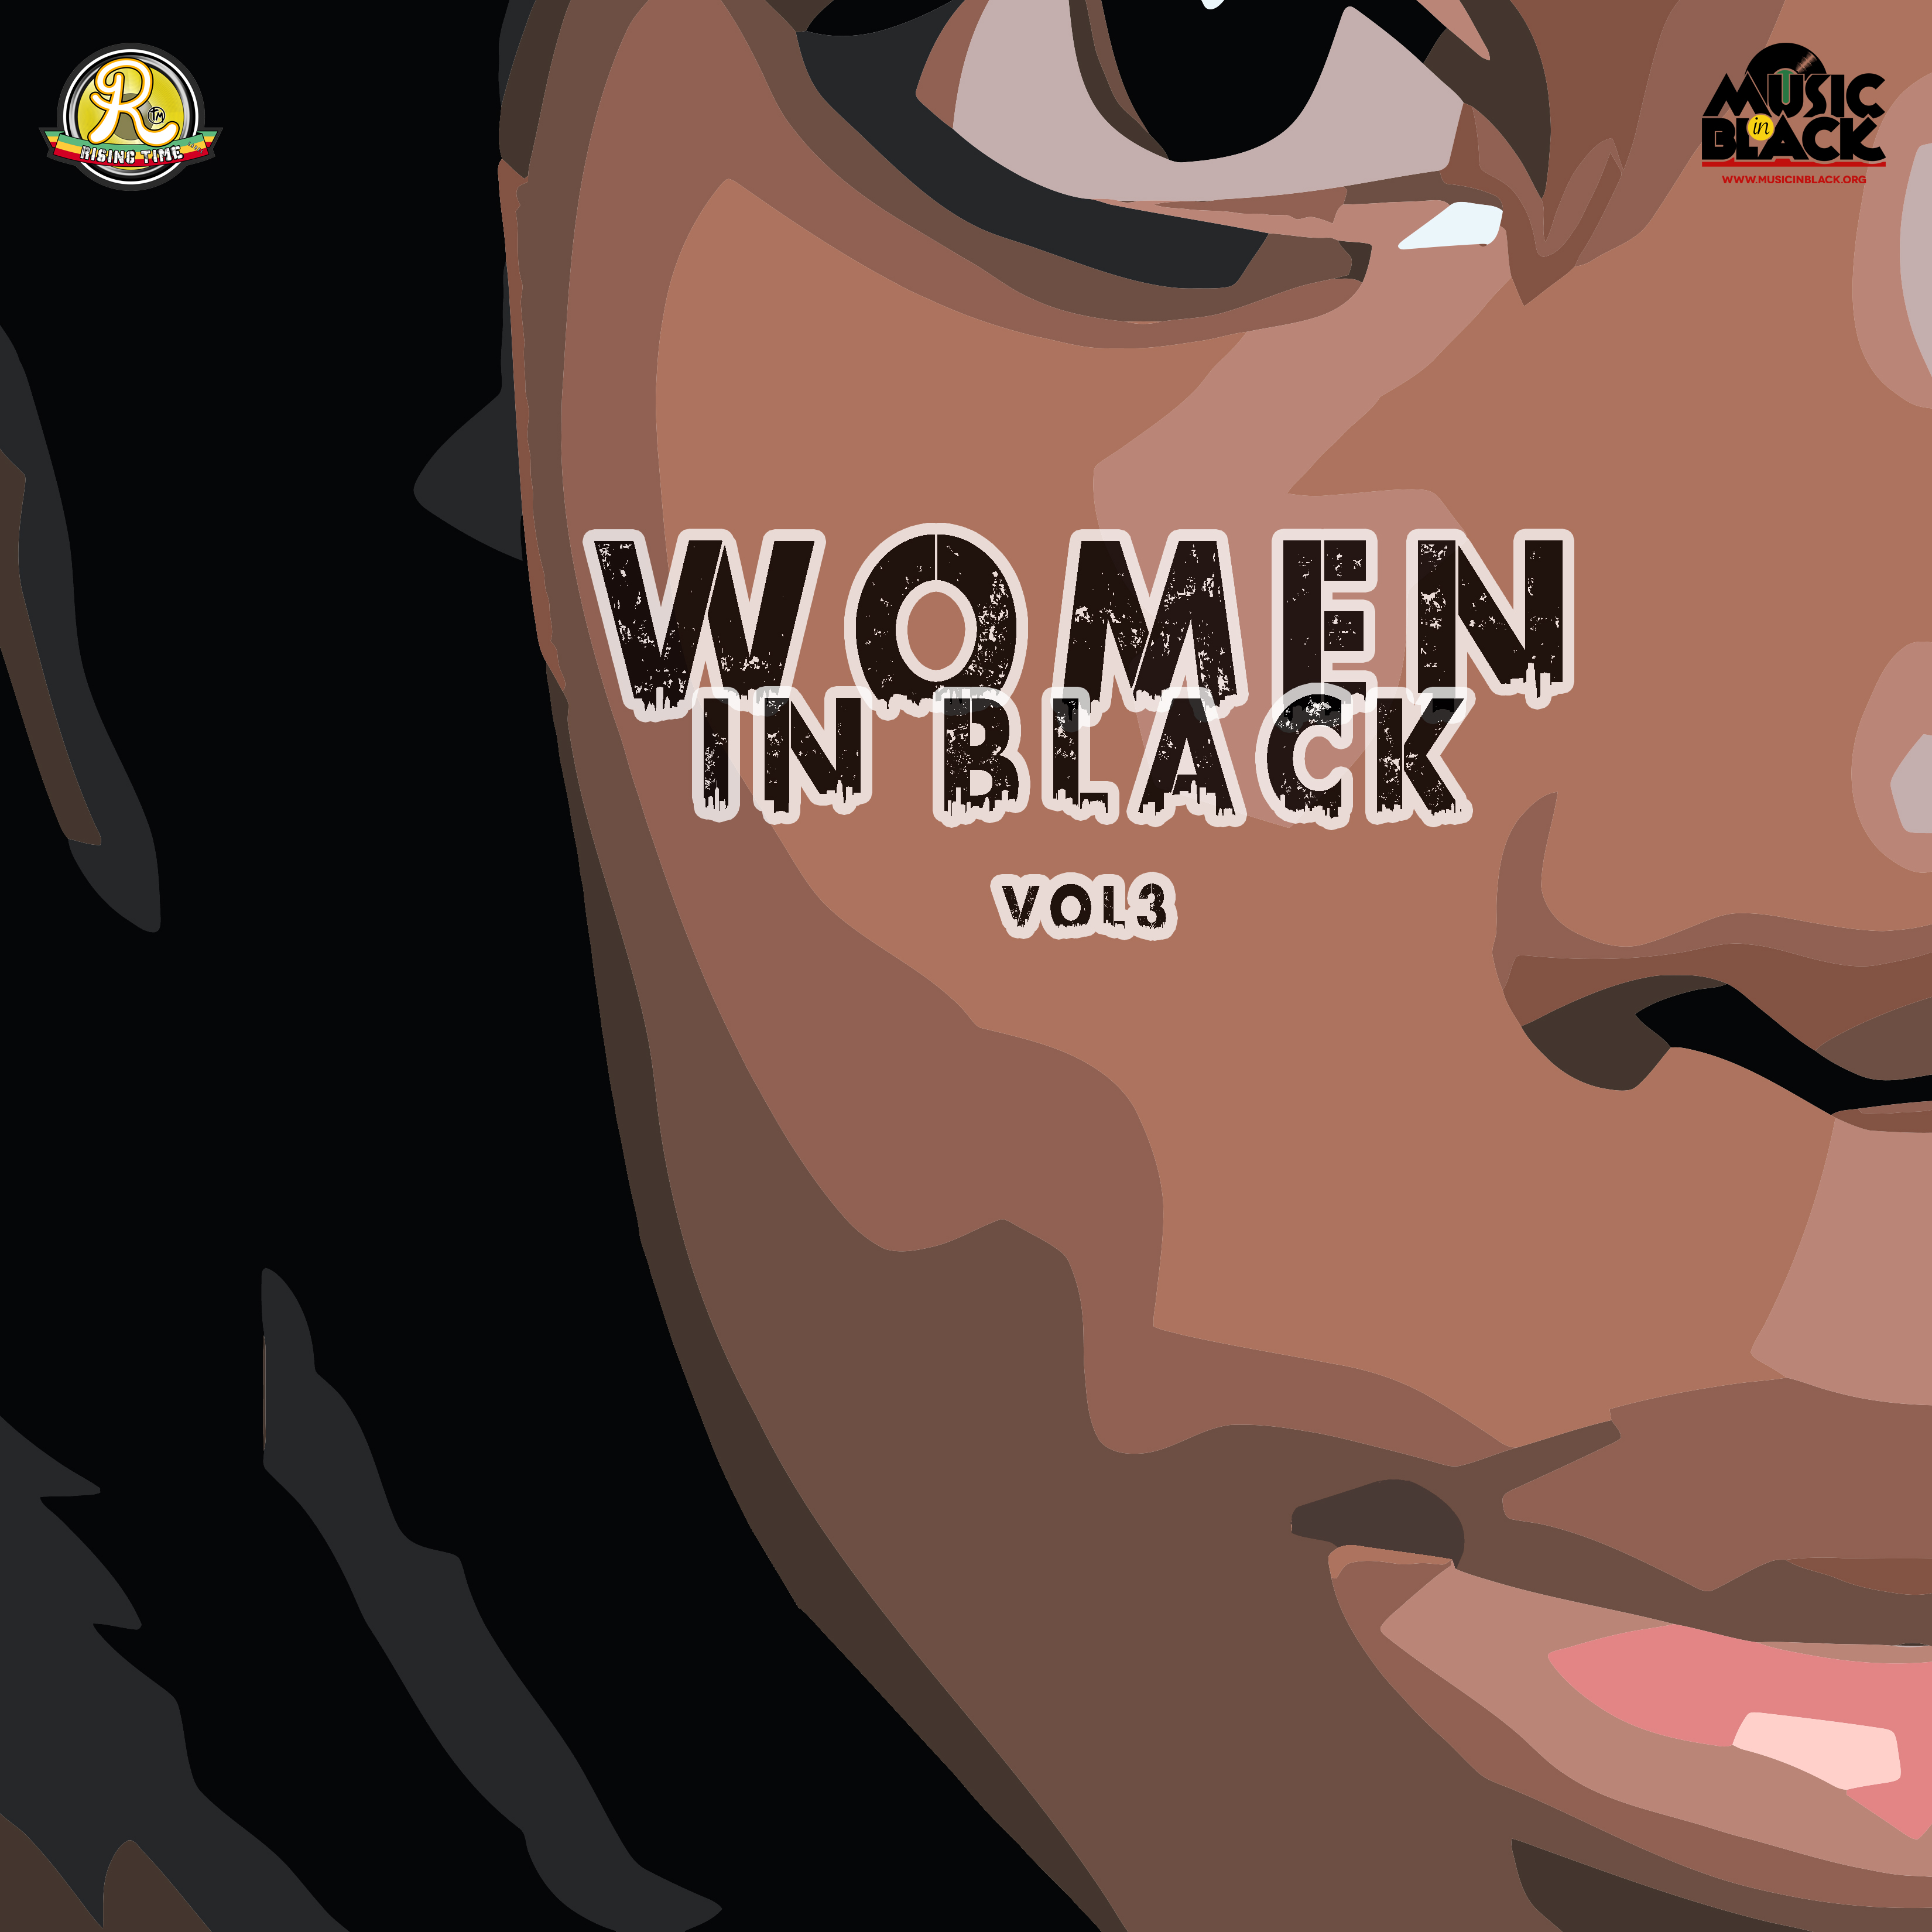 WOMEN IN BLACK VOL 3: il progetto discografico che valorizza le voci femminili